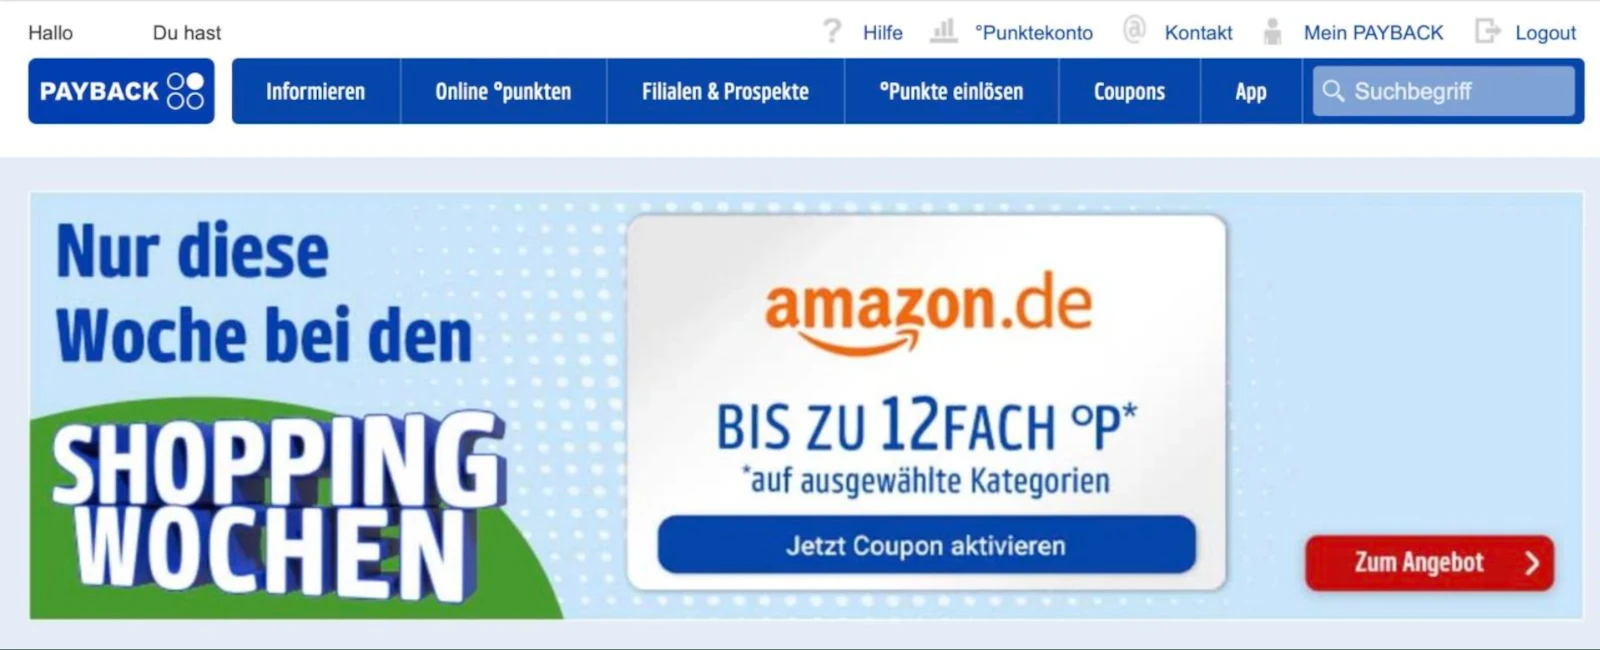 Amazon Coupon von Payback Deutschland auch als Österreicher nutzen